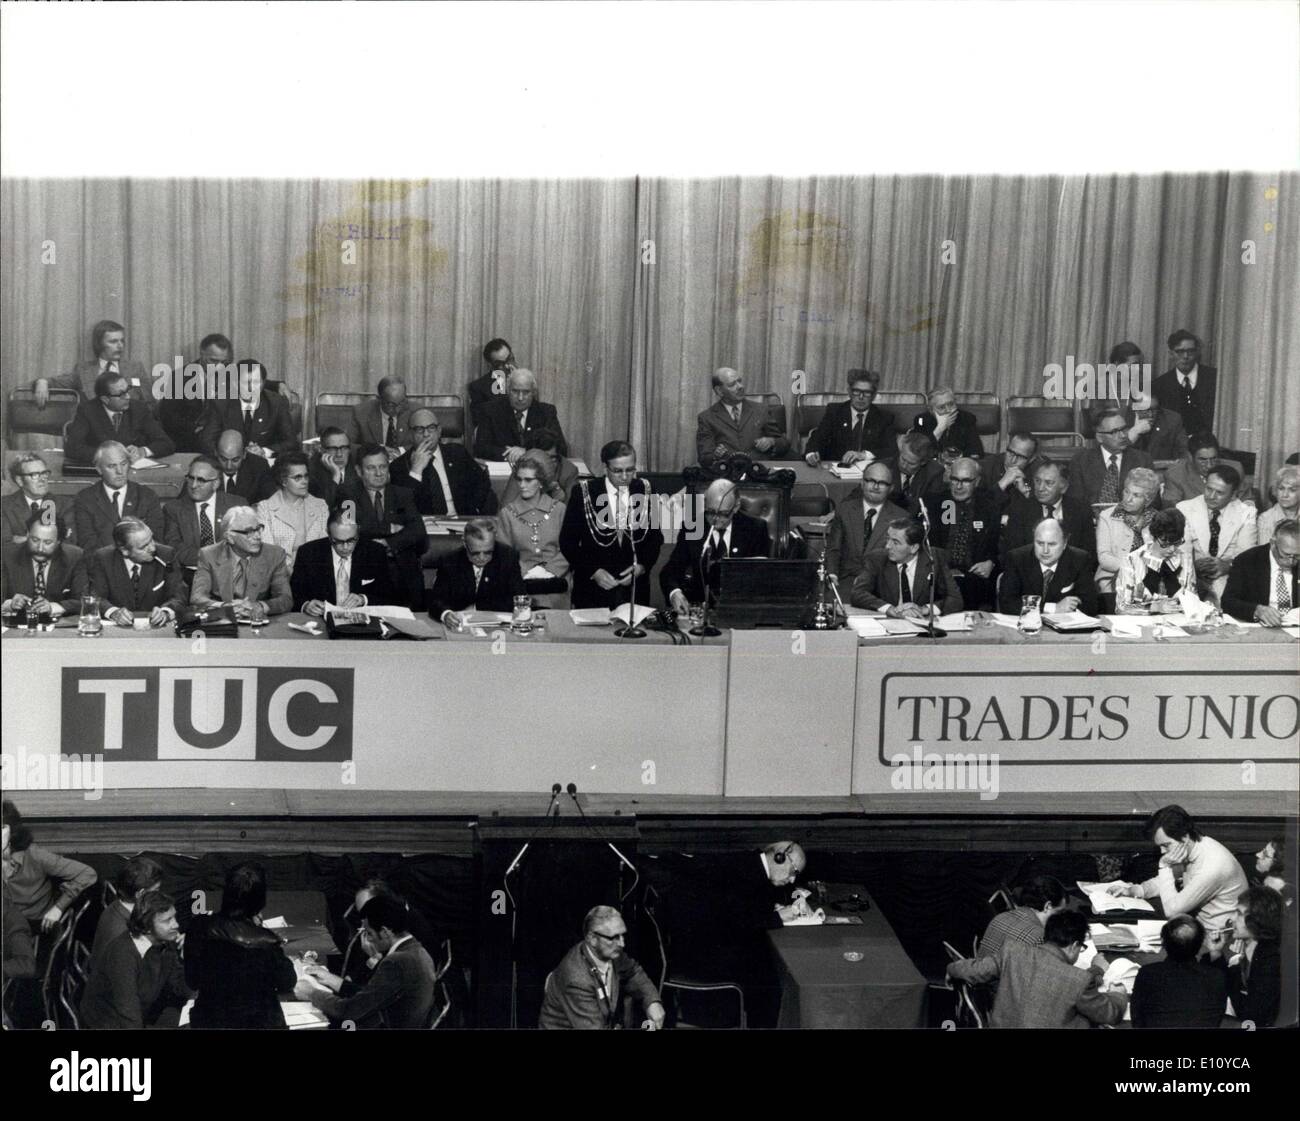 02 septembre 1974 - Ouverture de Trade Union Congress à Brighton : 1974 Trades Union Congress a ouvert aujourd'hui à la Coupole, Brighton. Banque D'Images